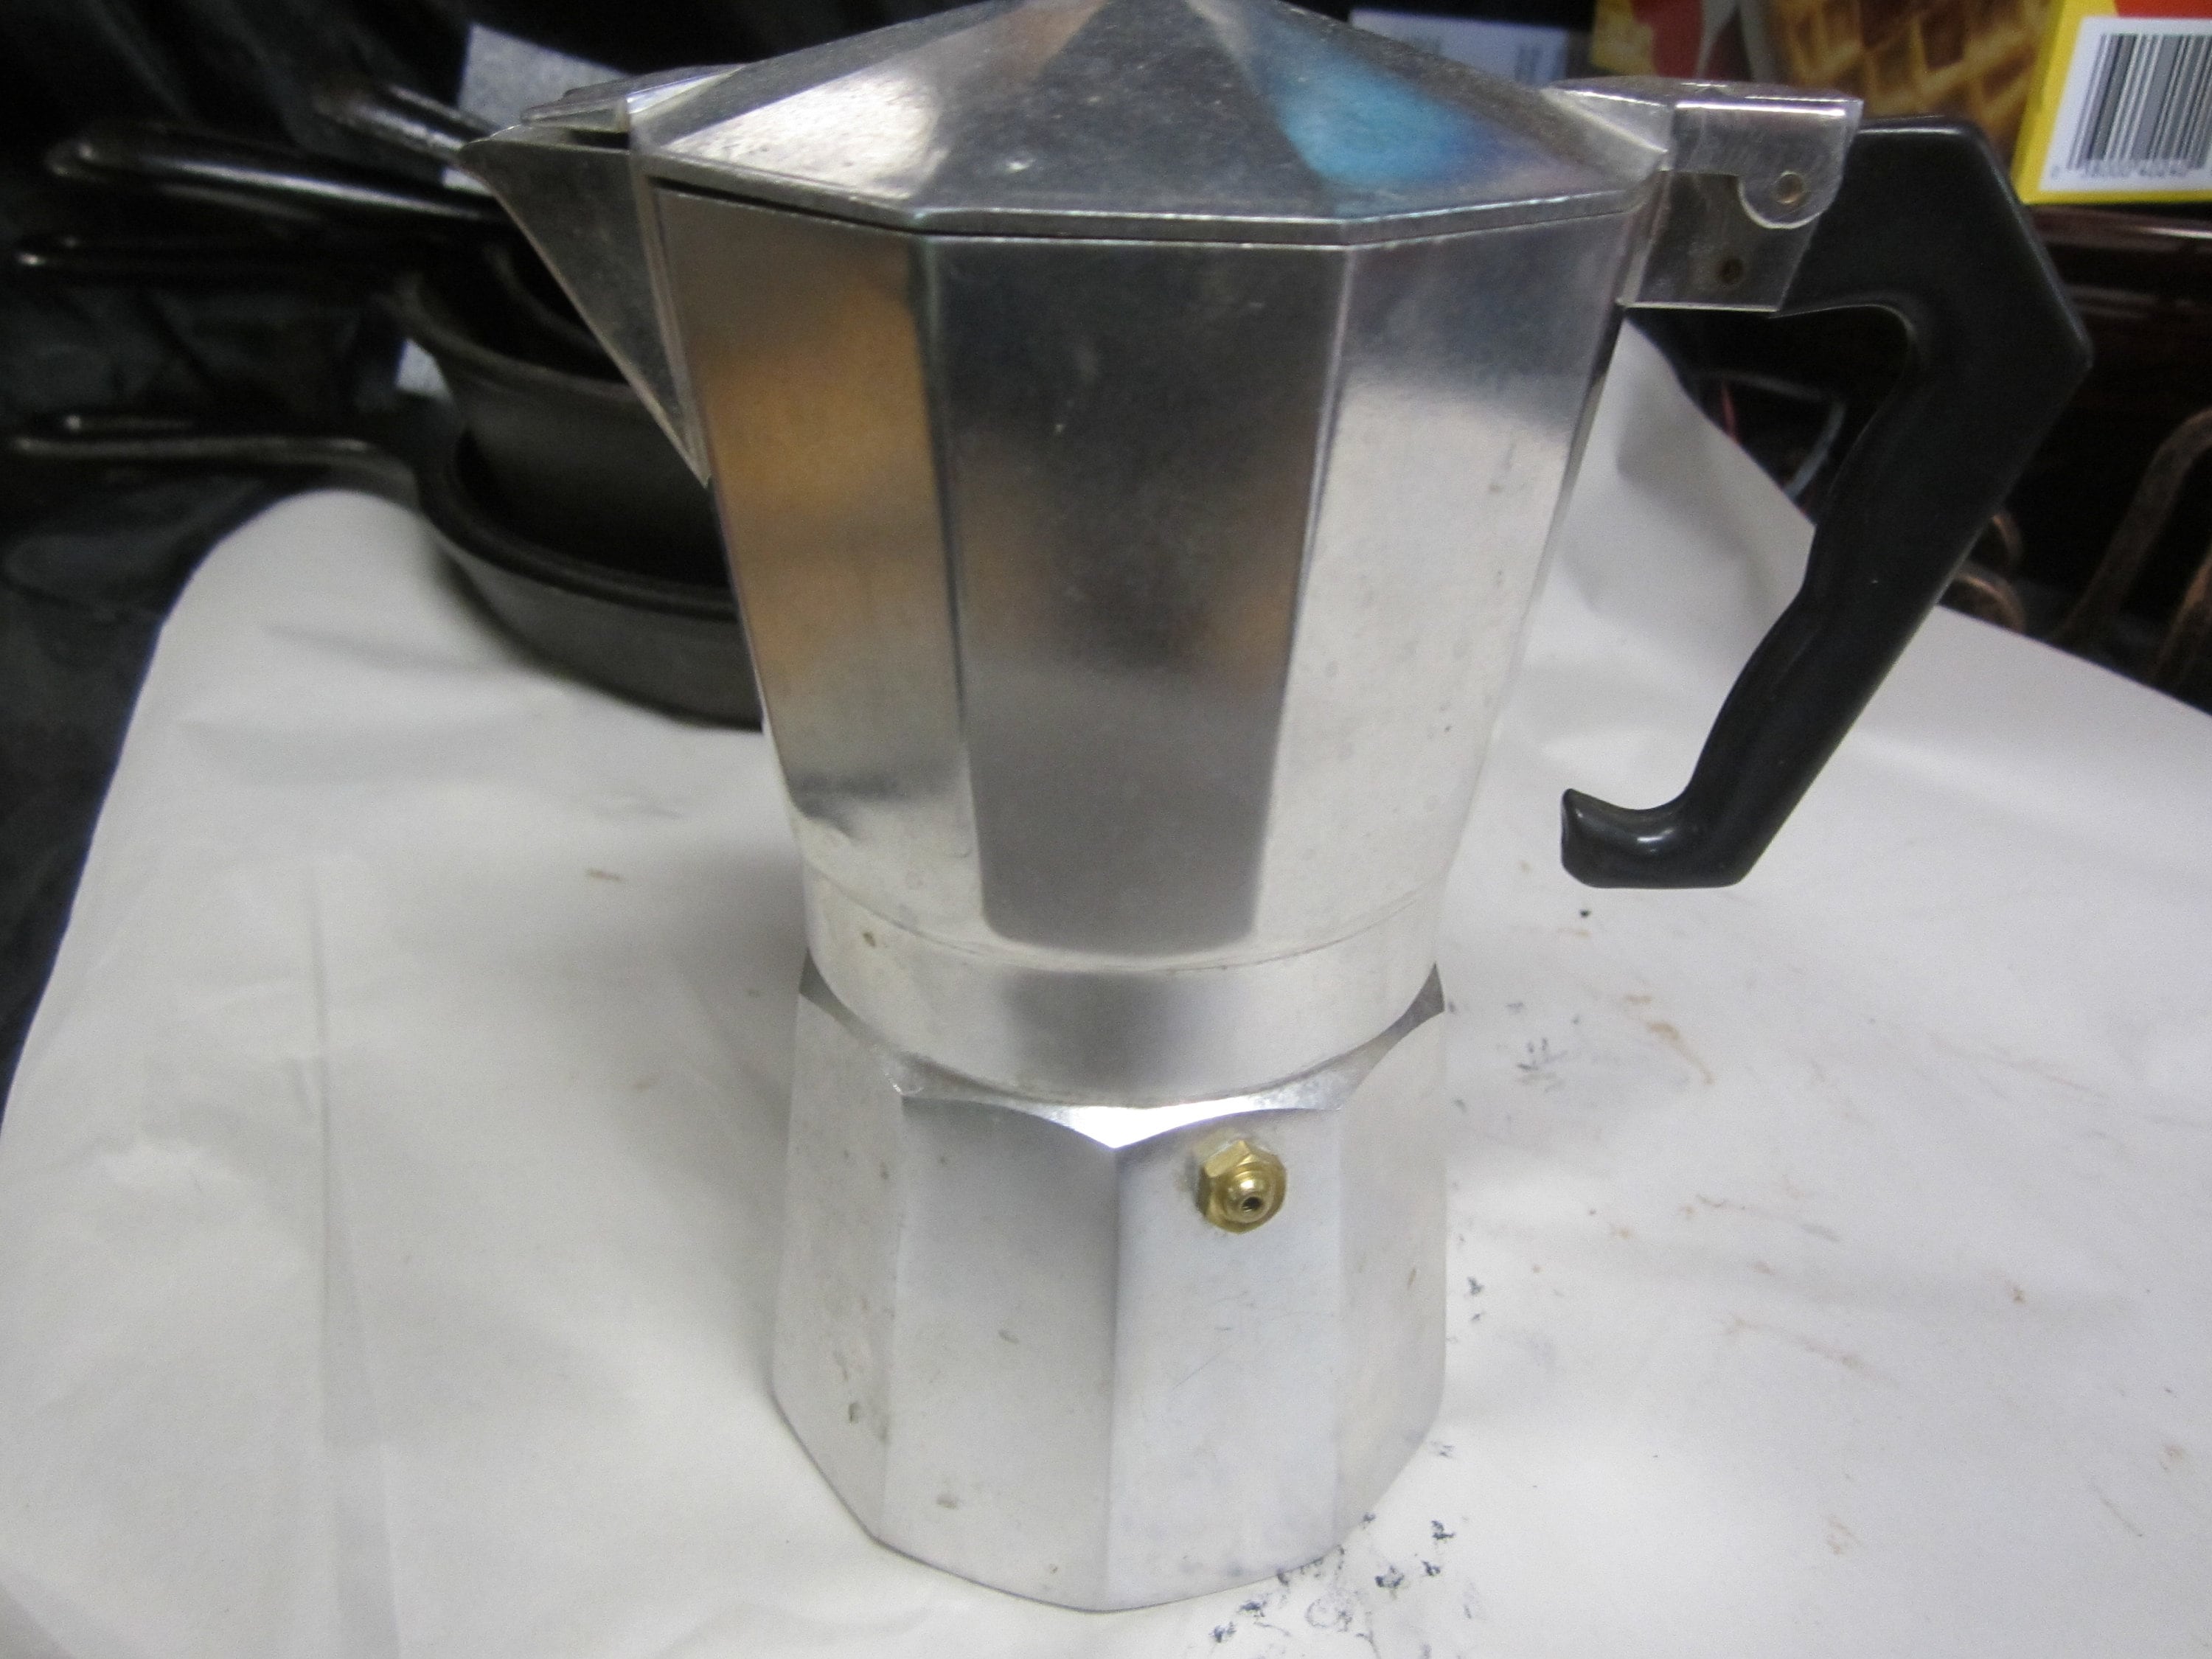 Vintage Elebak Elesa Italy Stovetop Espresso & Cappuccino Maker W